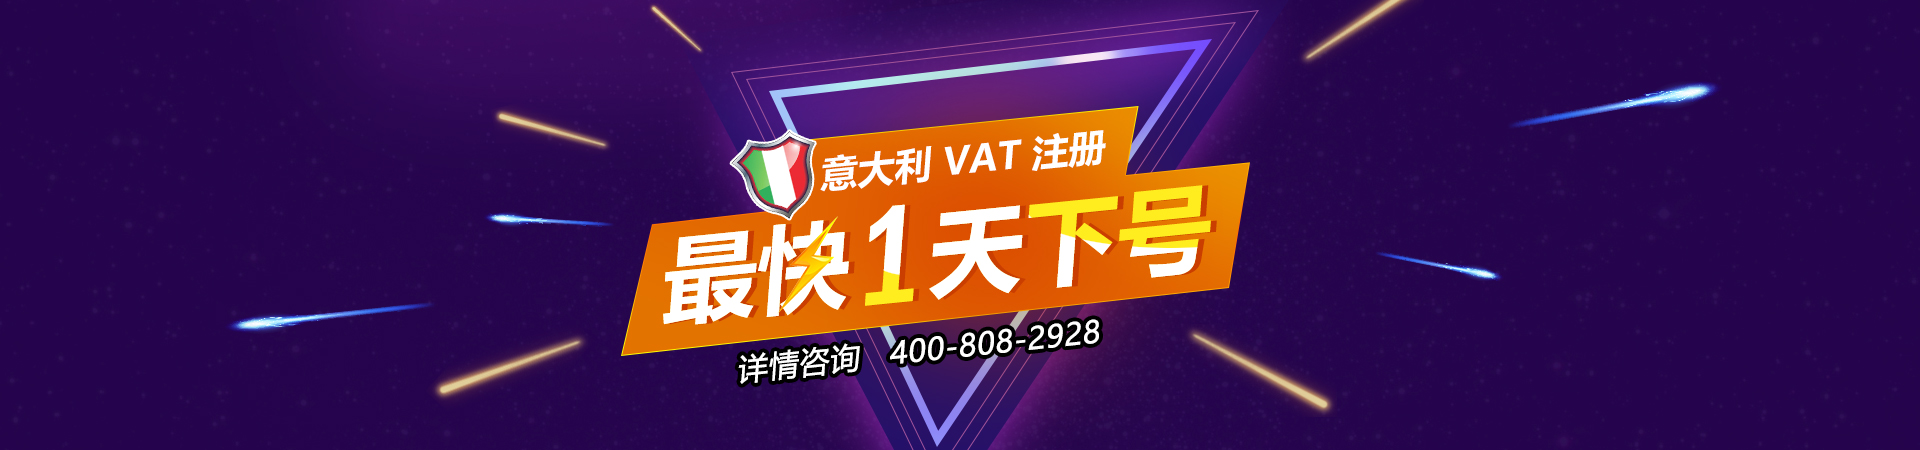 VAT注冊,英國VAT申報,深圳VAT注冊公司